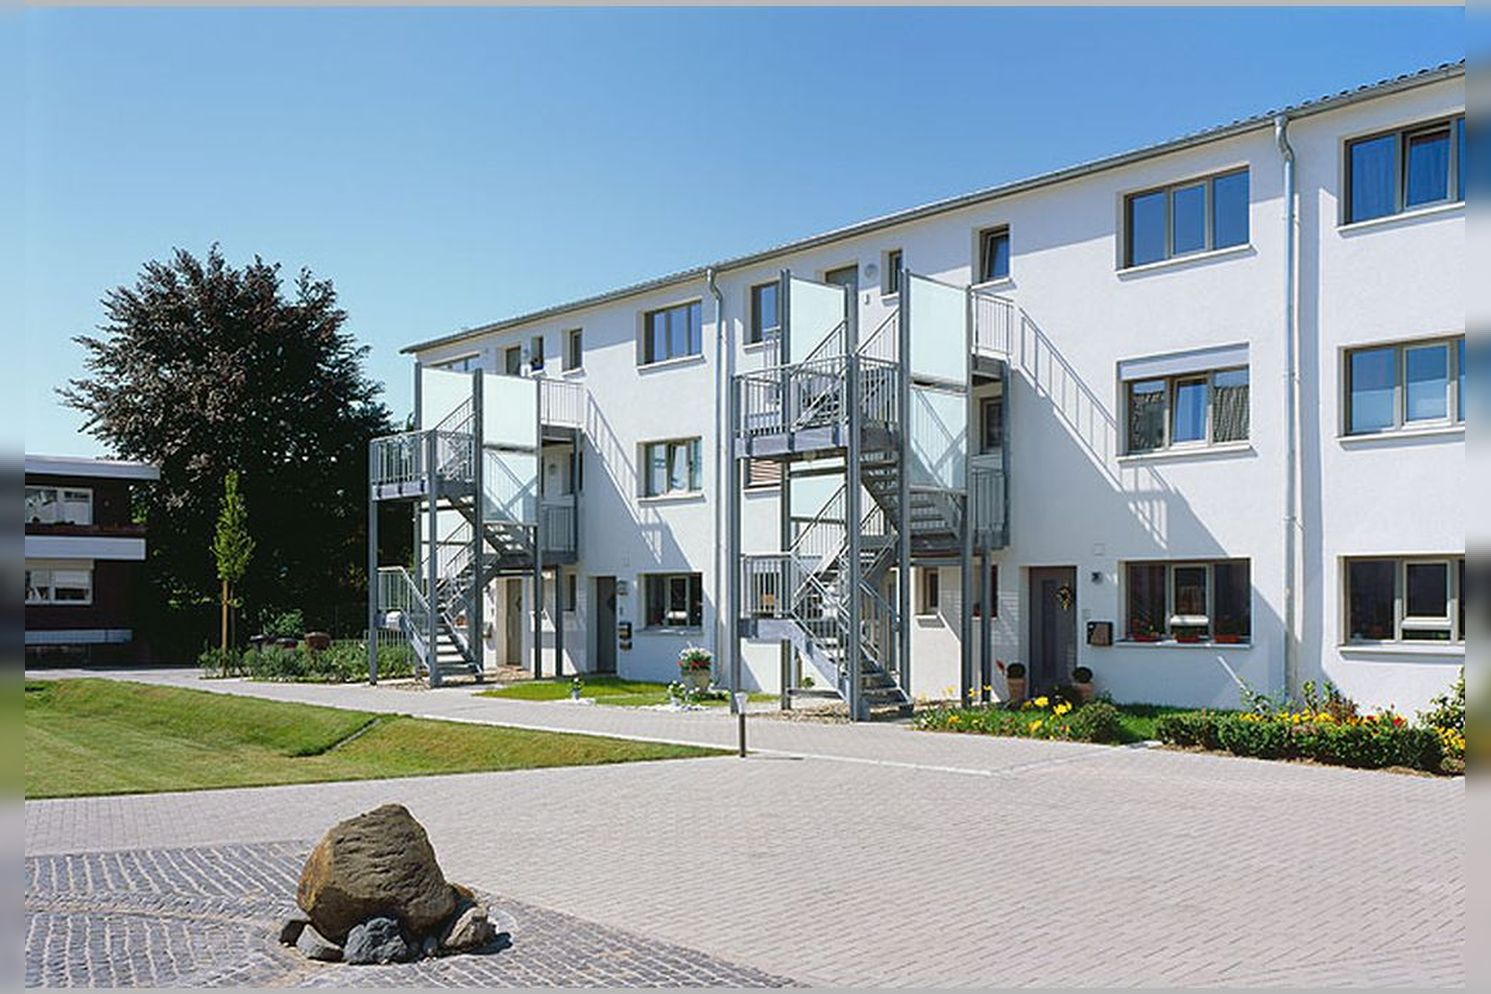 Immobilie Nr.D.dorf-Itter 100 - Reihenhäuser, Doppelhaushälften, Eigentumswohnungen auf Erbpacht - Bild 14.jpg